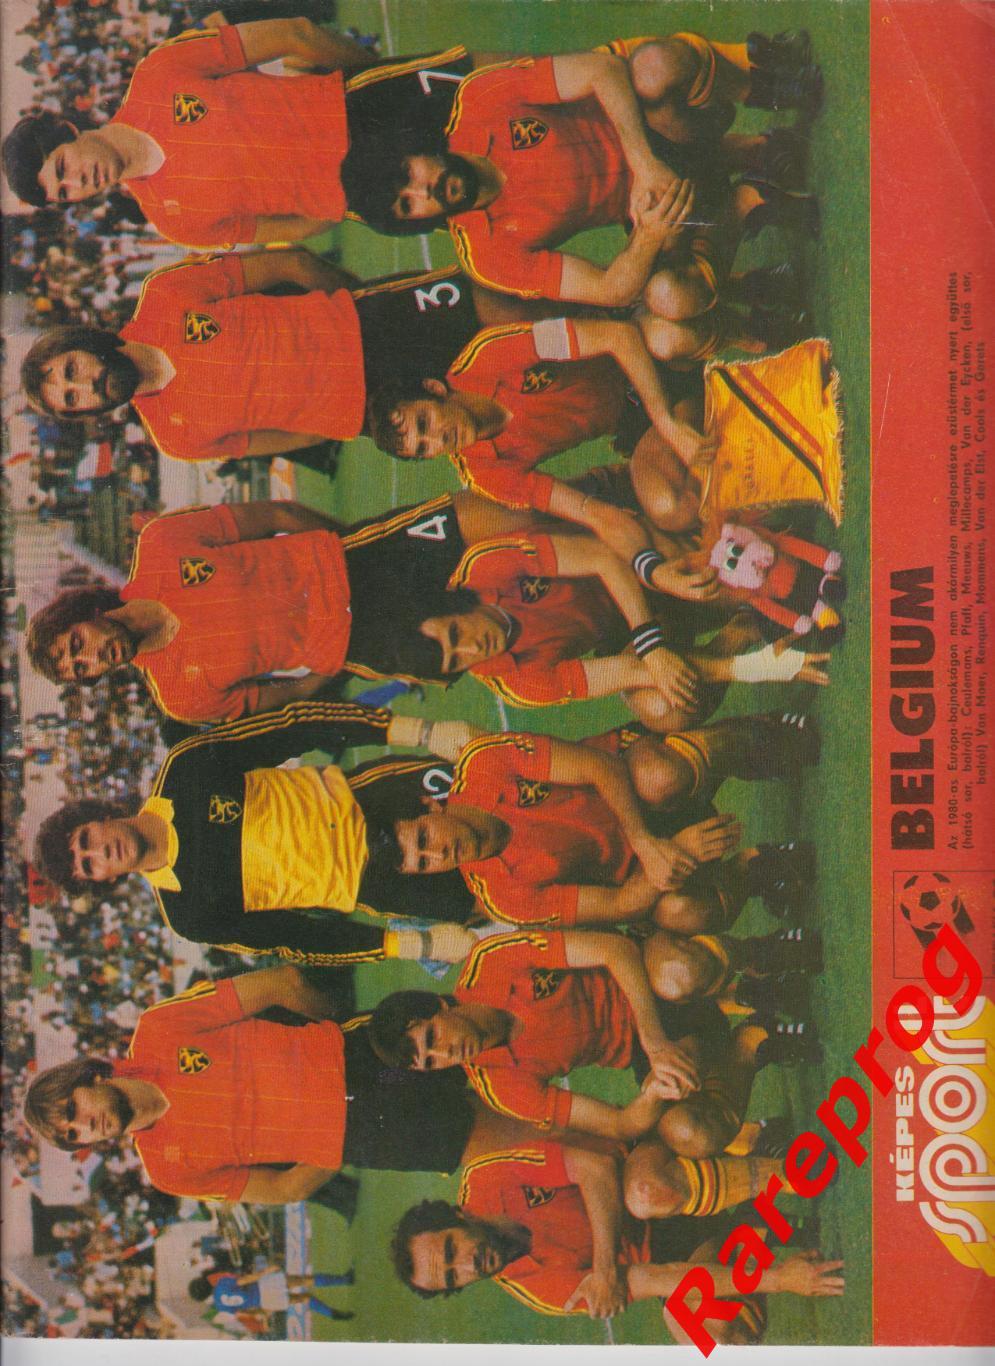 журнал Кепеш СПОРТ Венгрия № 4 1982 - Чемпионат Мира Испания - Бельгия Аргентина 1